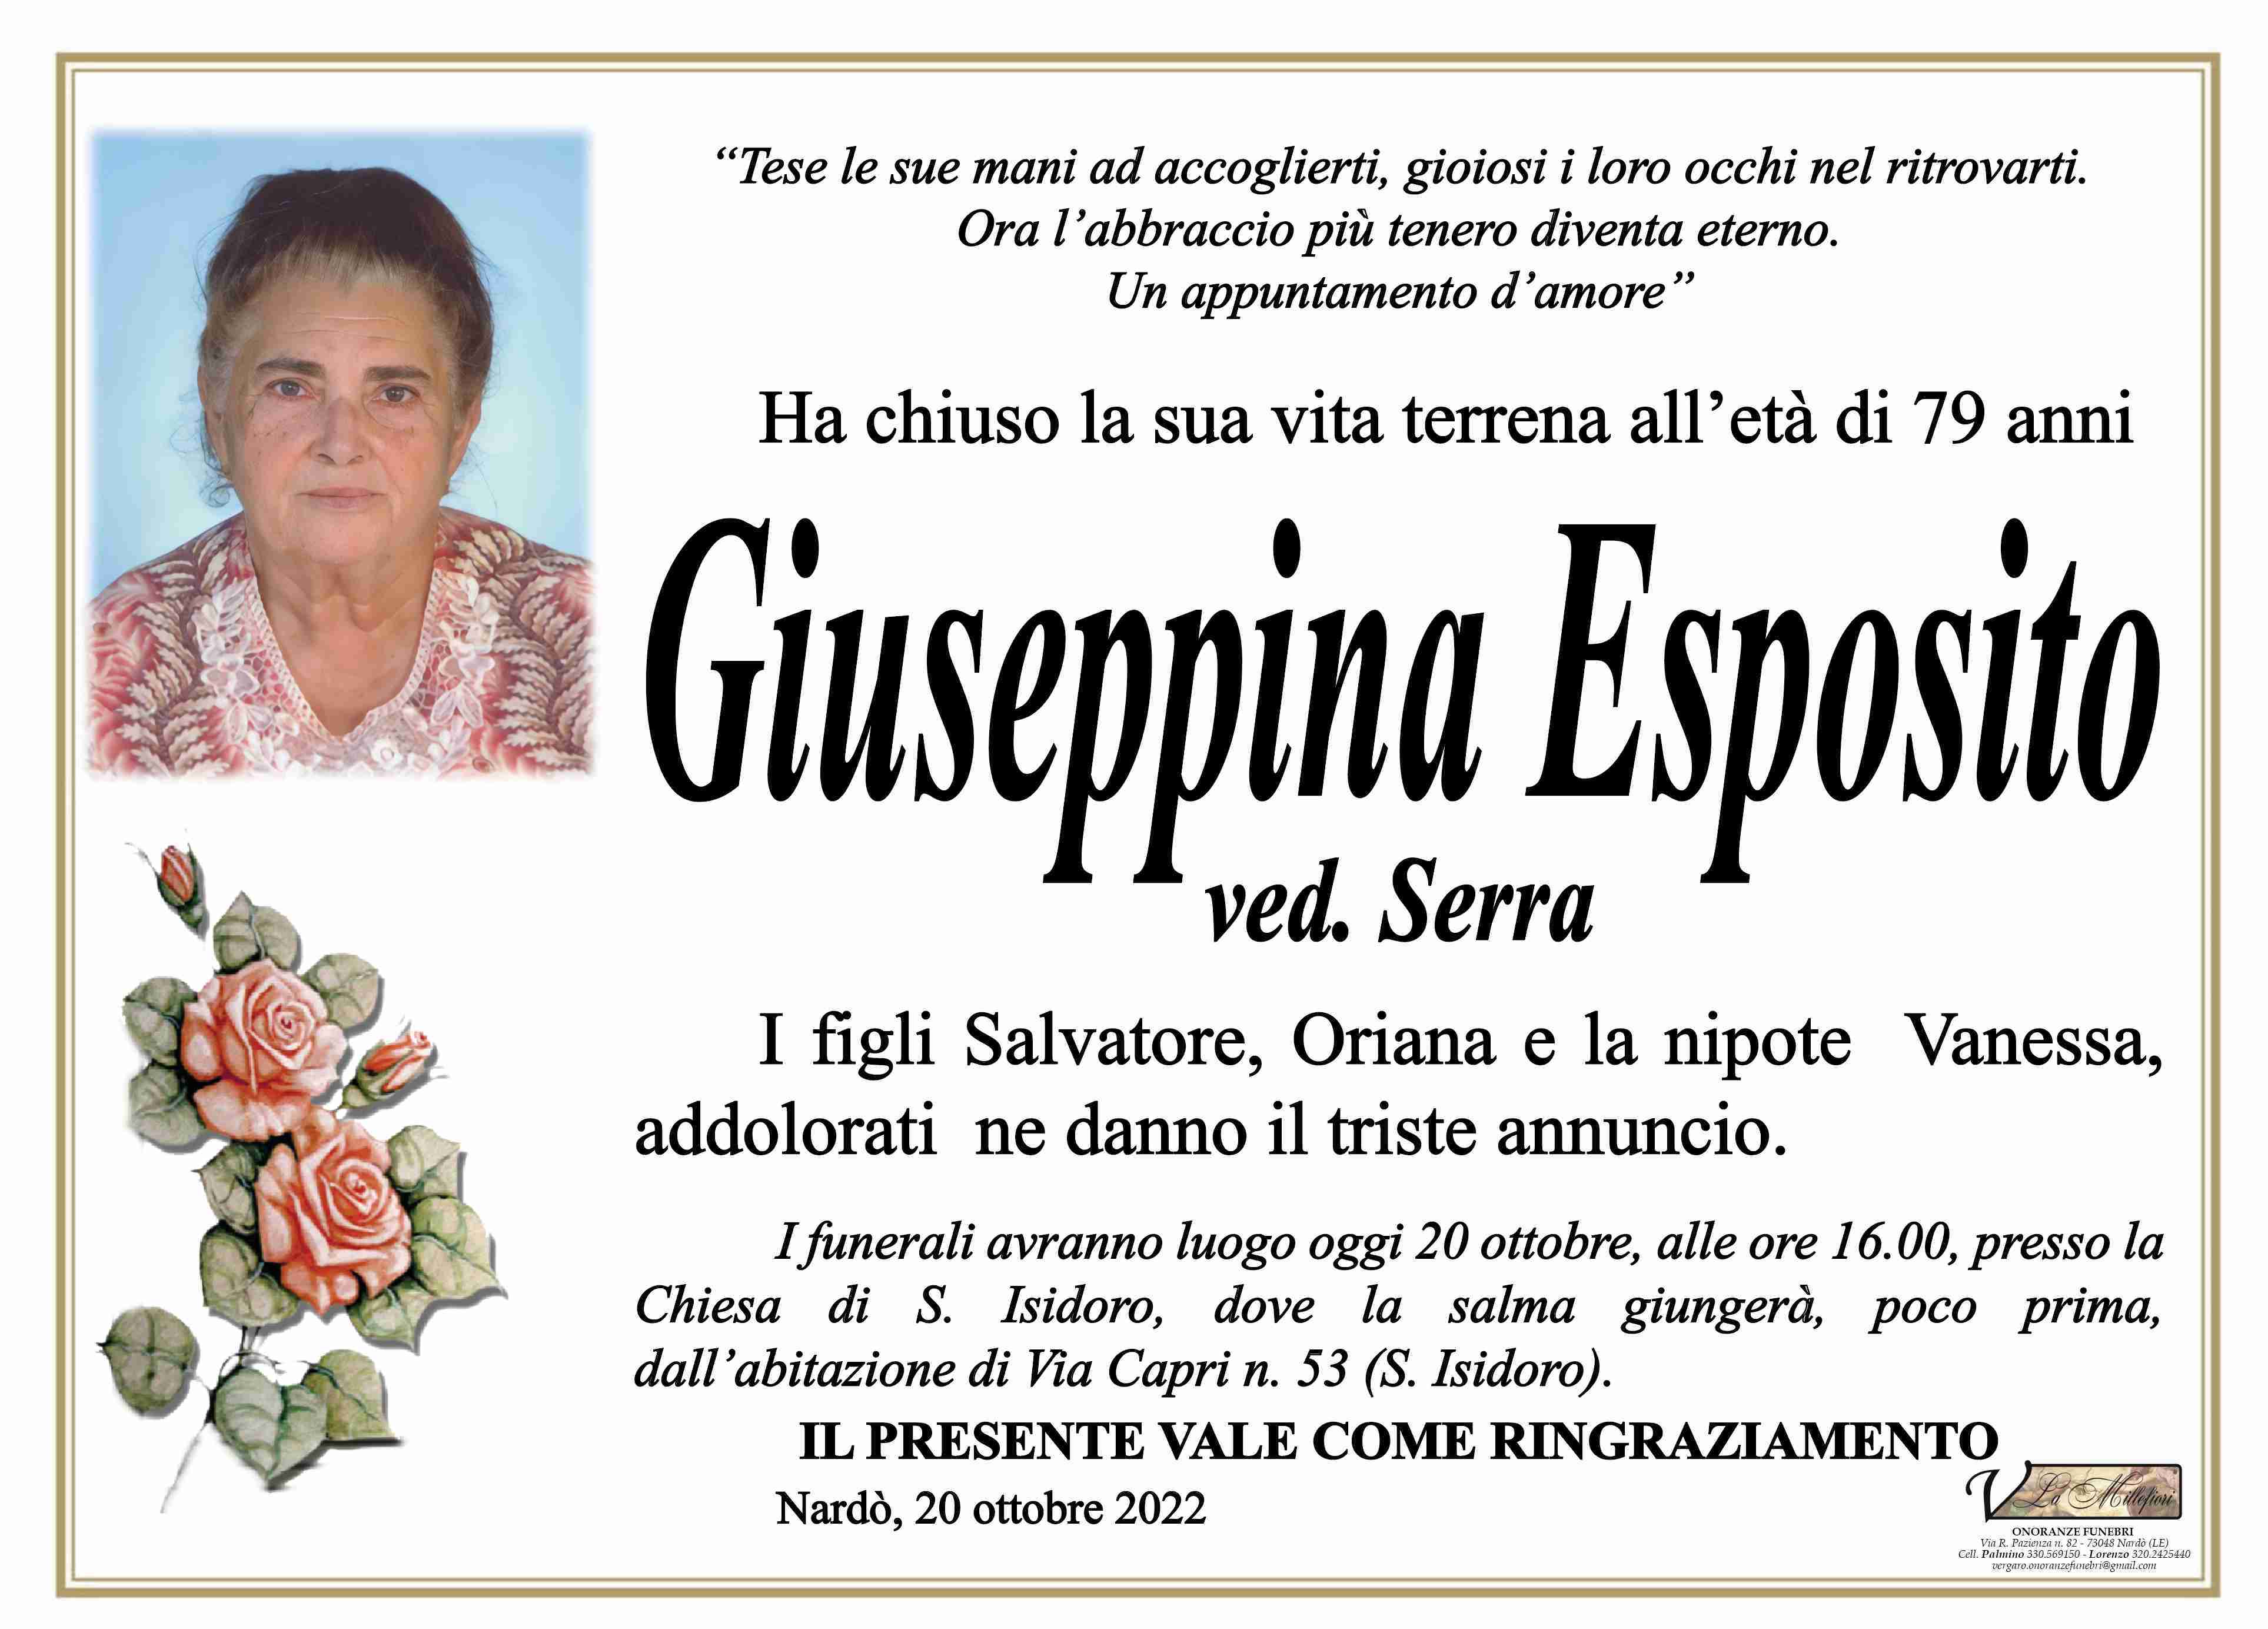 Giuseppina Esposito